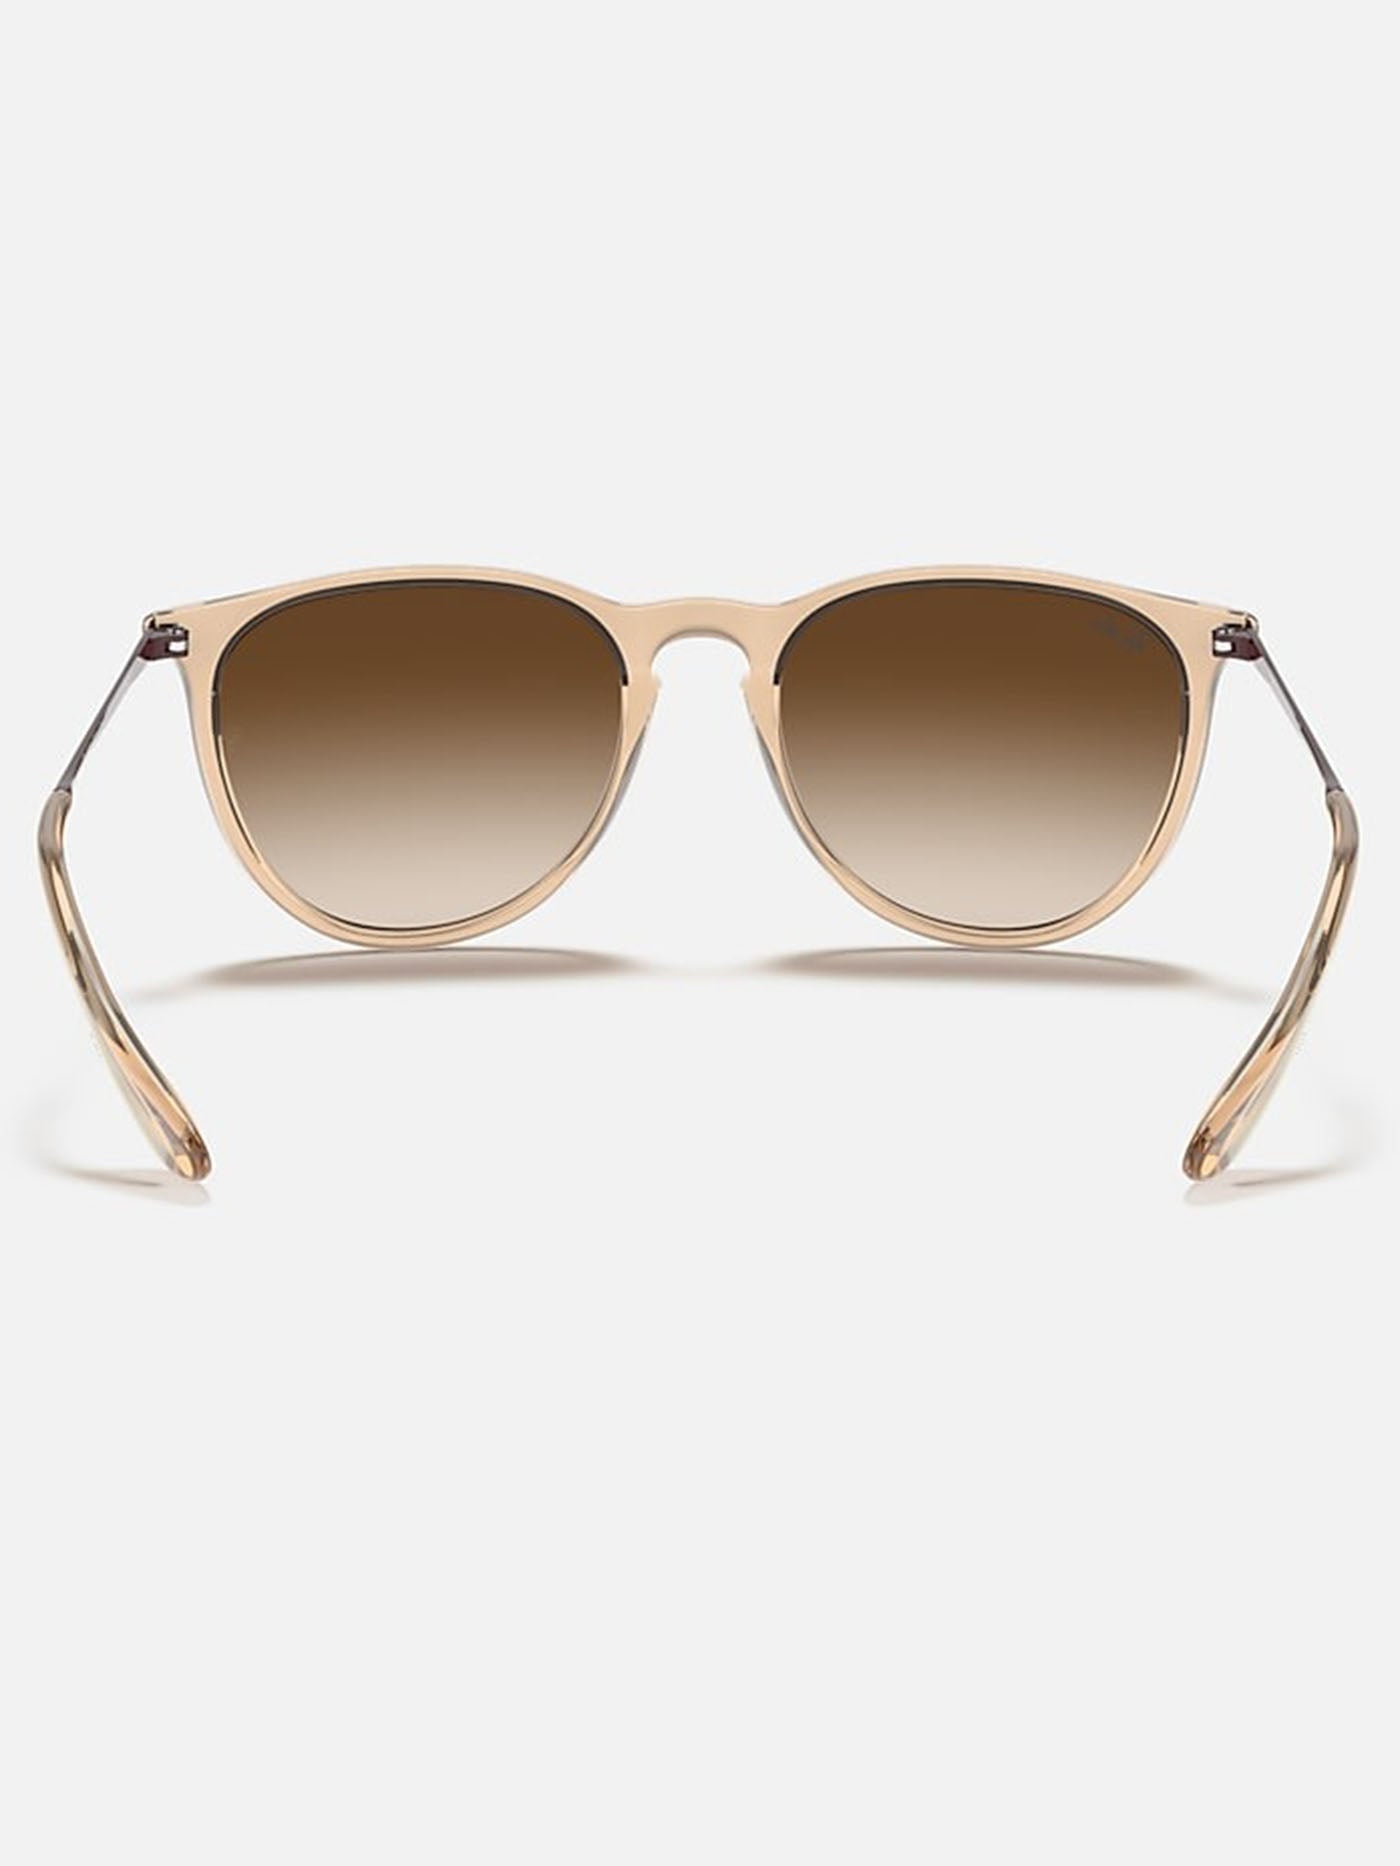 Ray Ban 2024 Erika Transparent Brown/Brown Gradient Sunglasses